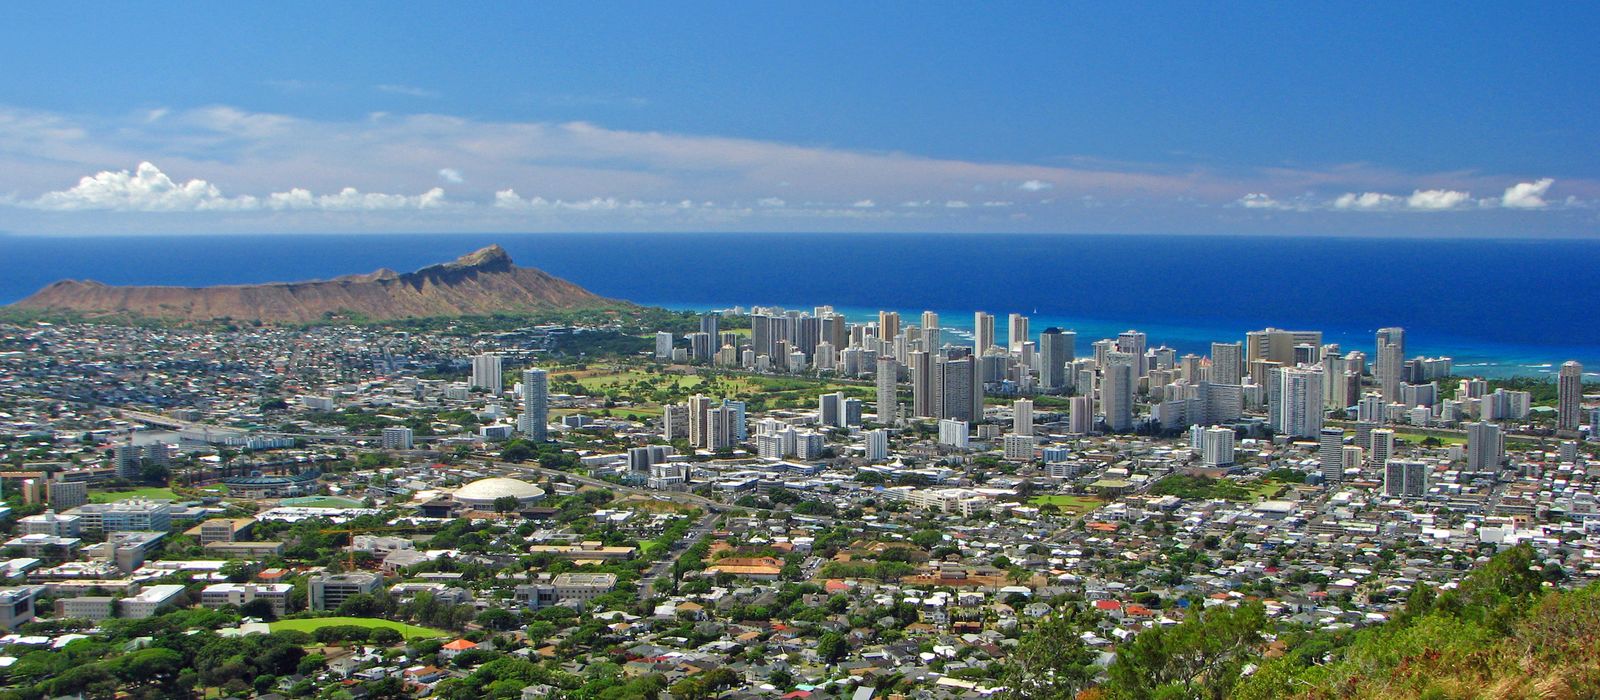 Skyline von Waikiki mit Diamond Head